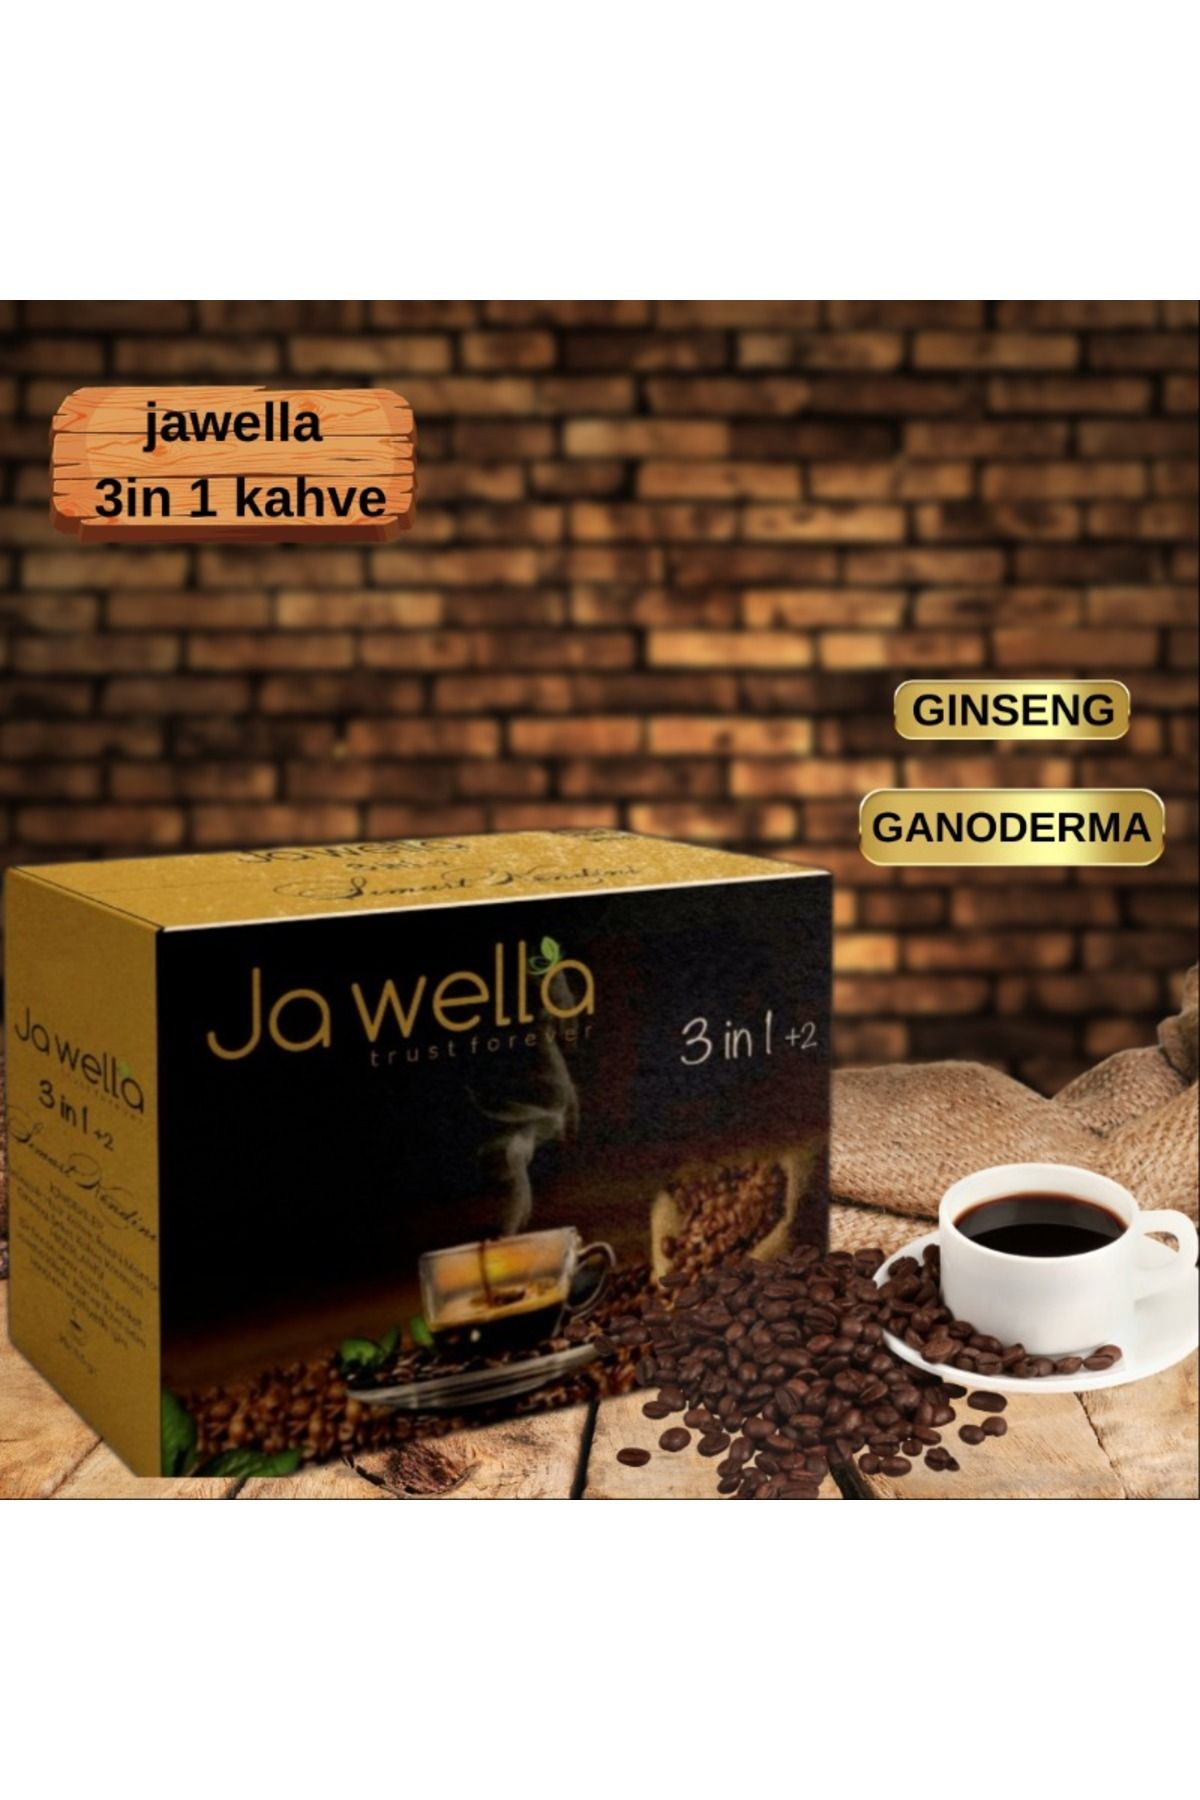 ja wella Jawella 3in1 2 Coffee